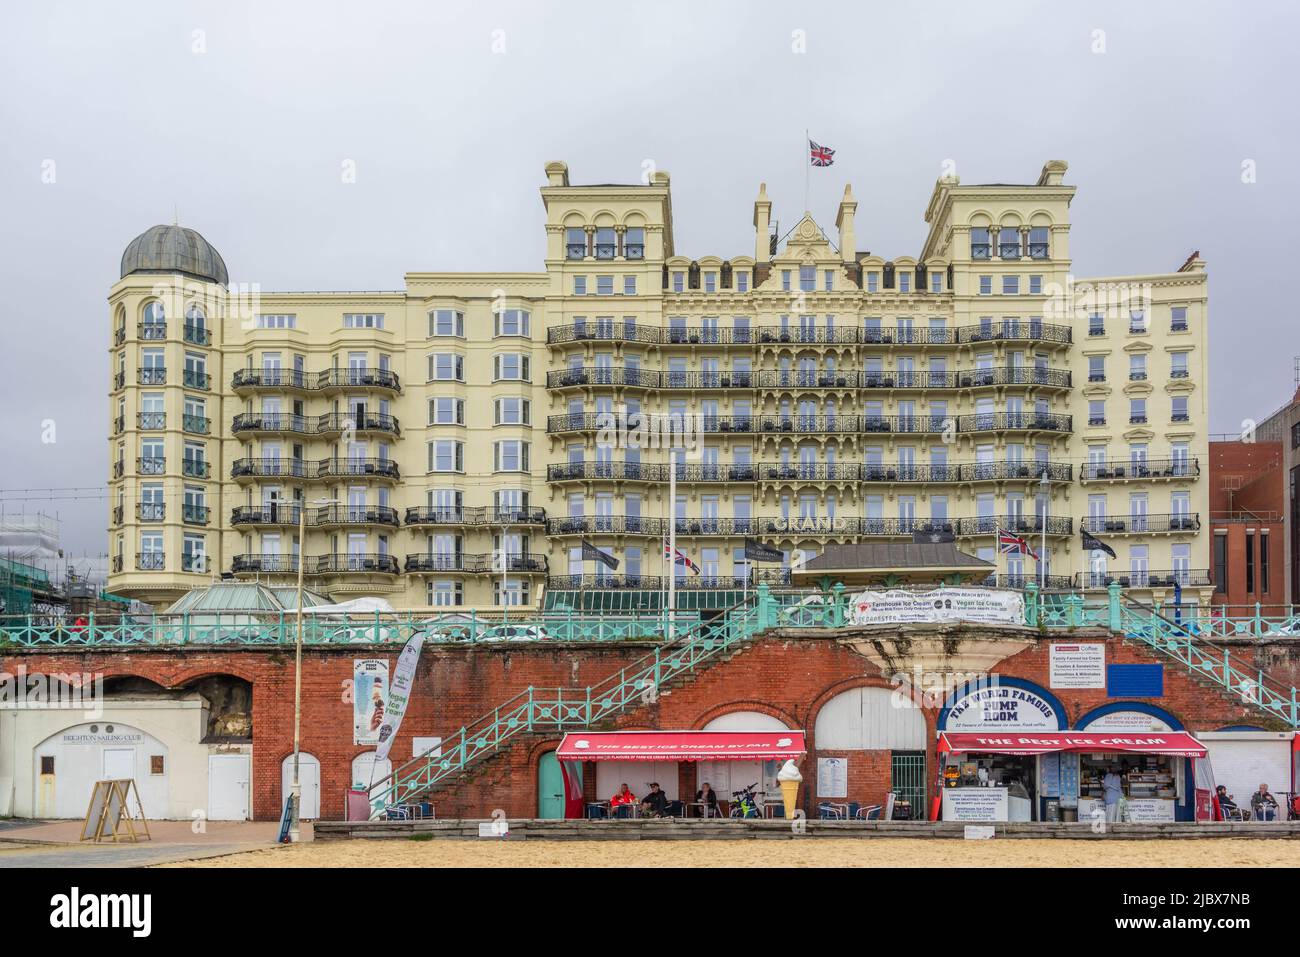 El Grand Hotel, arquitectura histórica victoriana a lo largo del paseo marítimo en Brighton, East Sussex, Inglaterra, Reino Unido Foto de stock